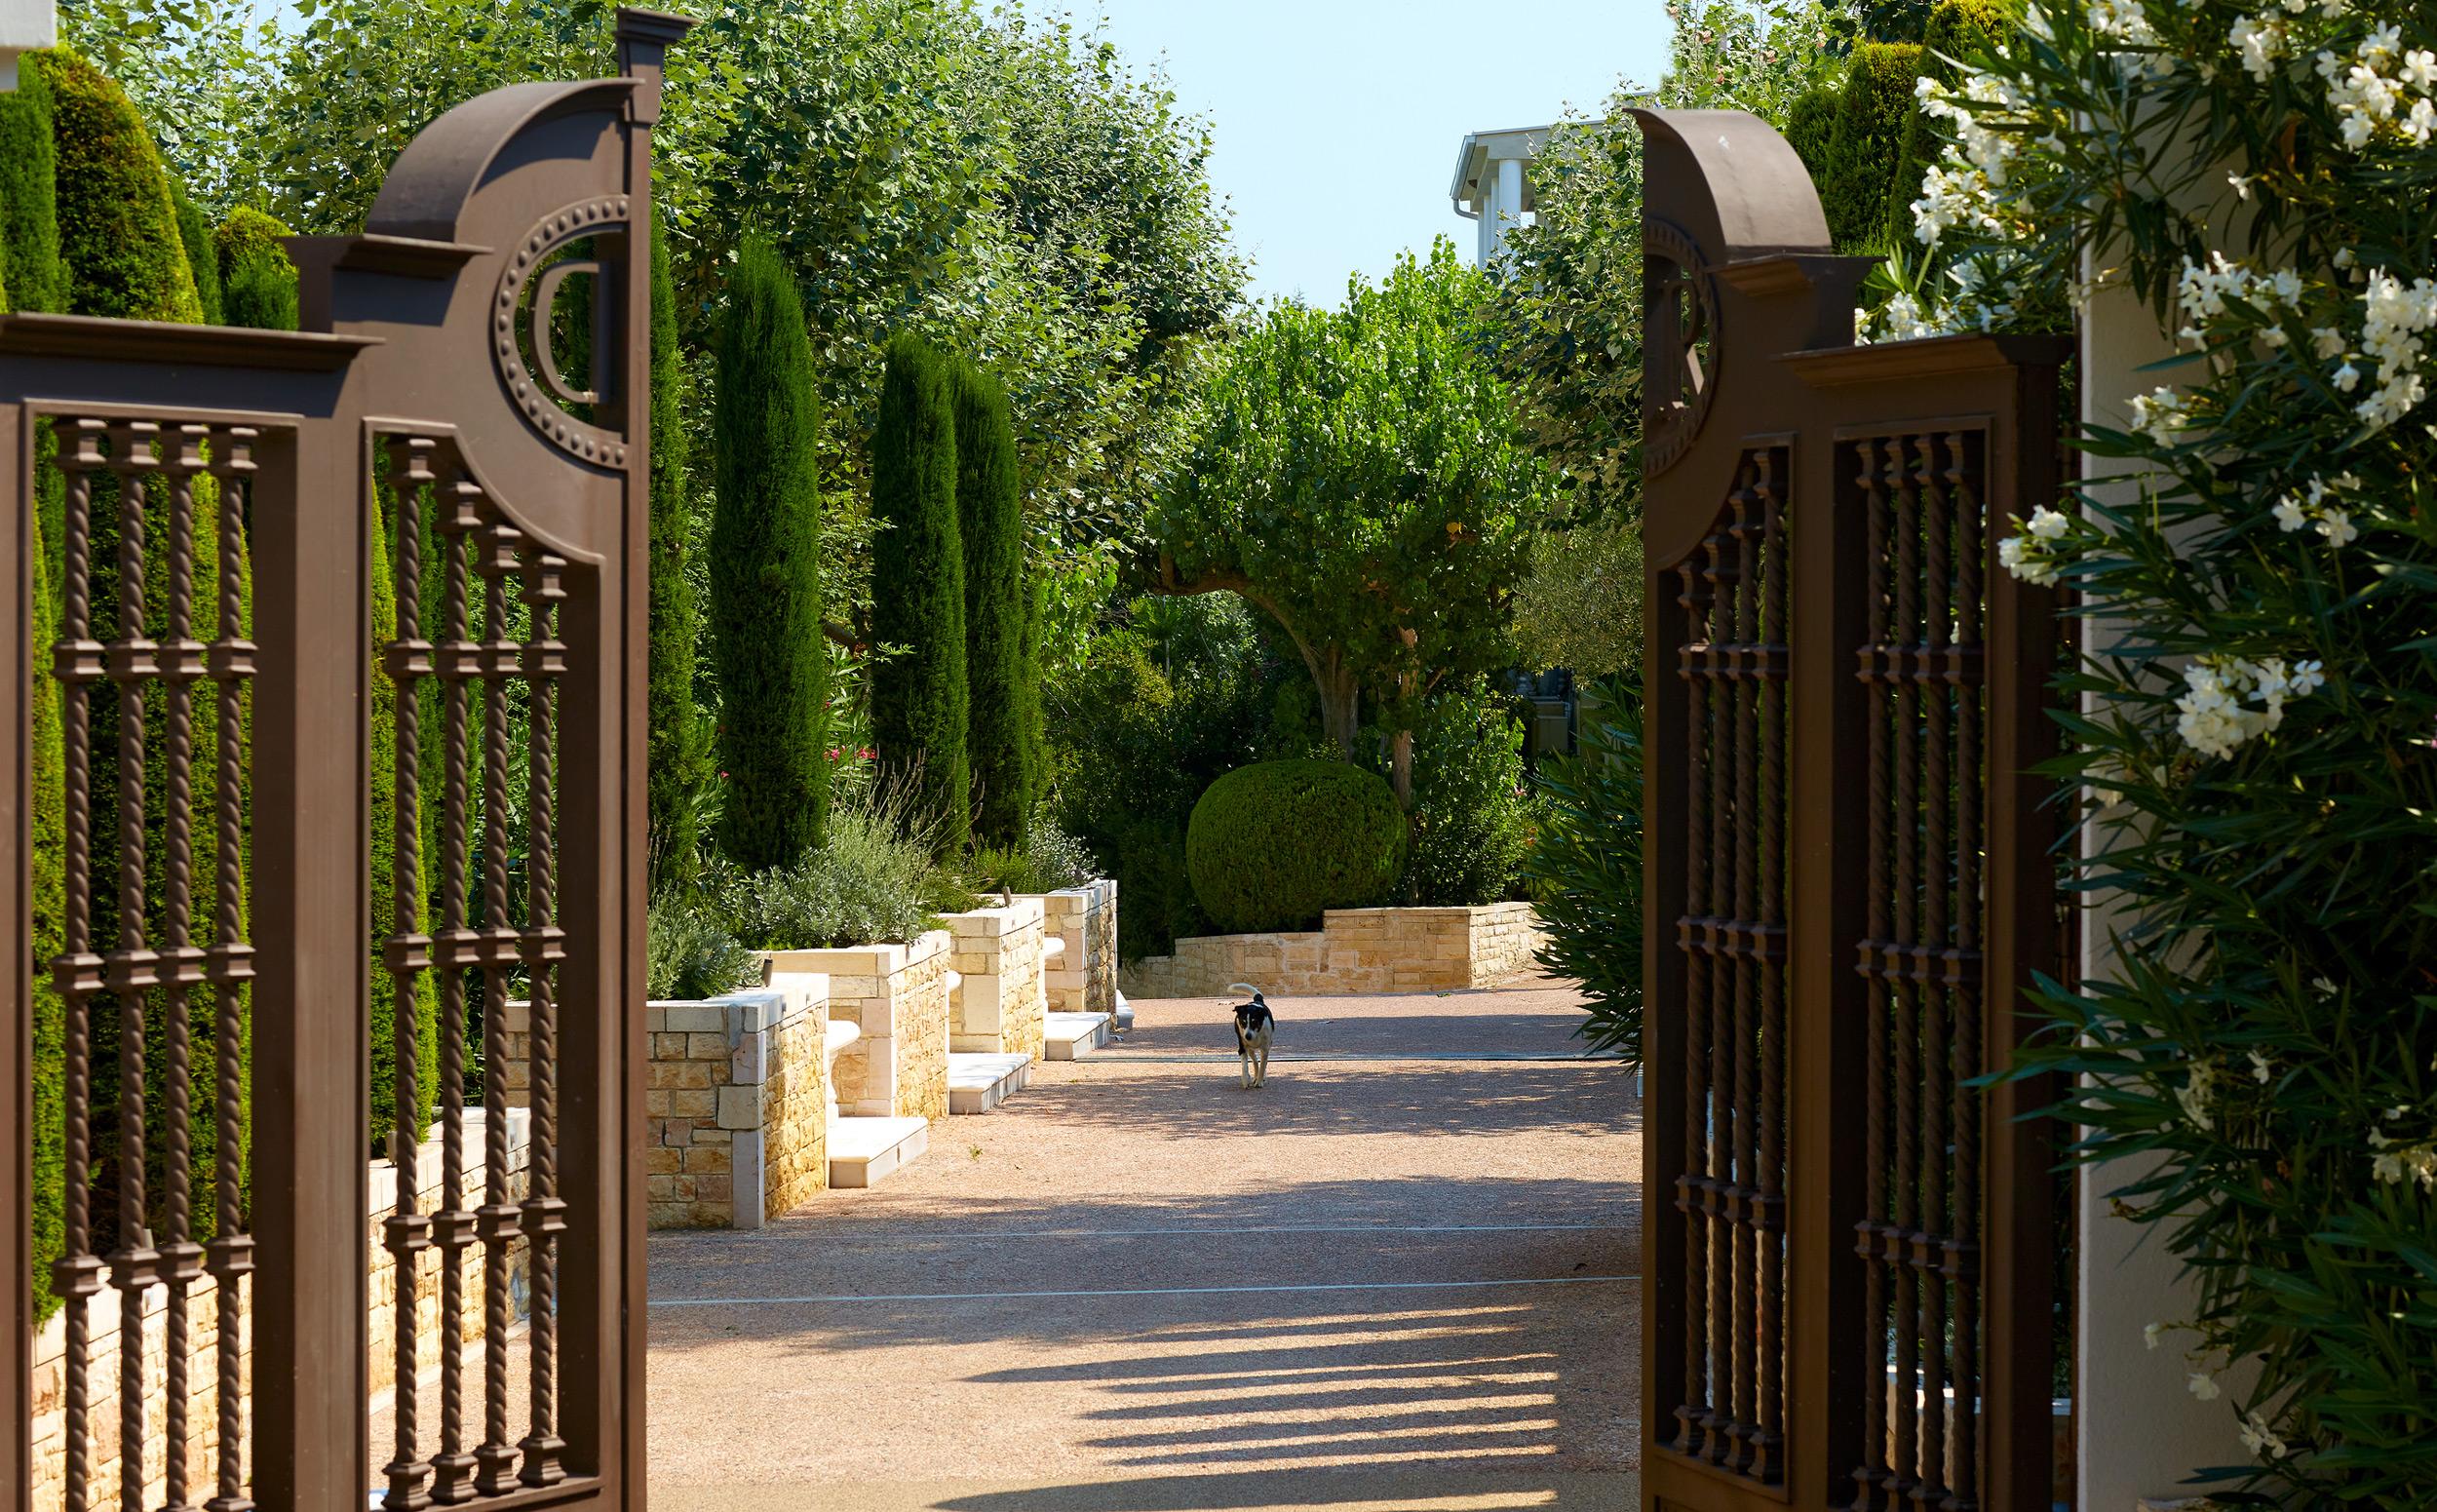 Danai Beach Resort, Greece, entrance, gate, dog , garden